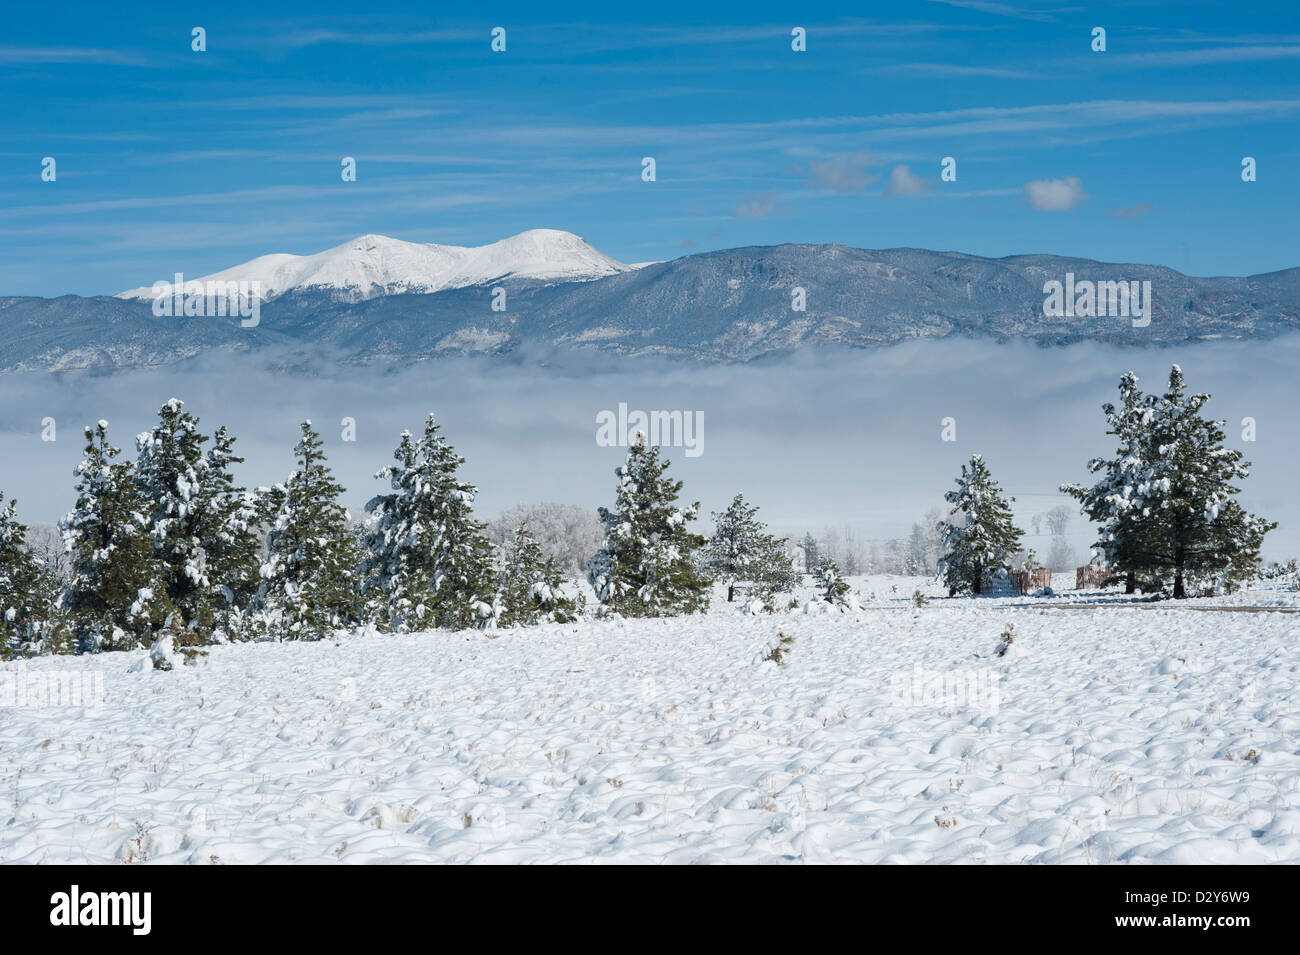 Die schneebedeckten Berge im Hintergrund sind Buffalo Gipfel, und in der Mitte Boden Nebel liegt entlang des Arkansas River. Stockfoto